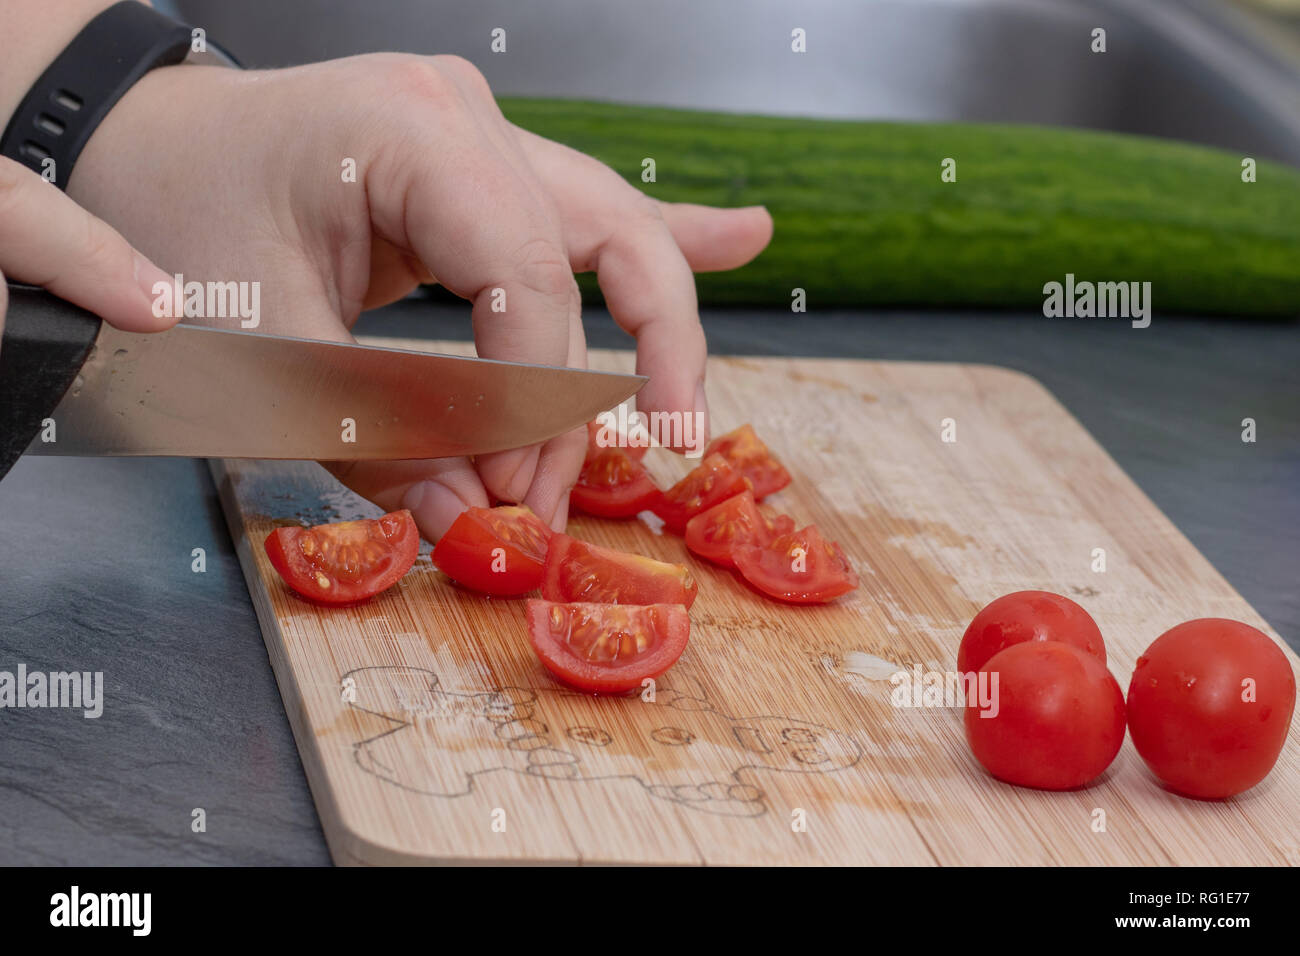 Frauenhand Tomate hinter frisches Gemüse schneiden. Stockfoto